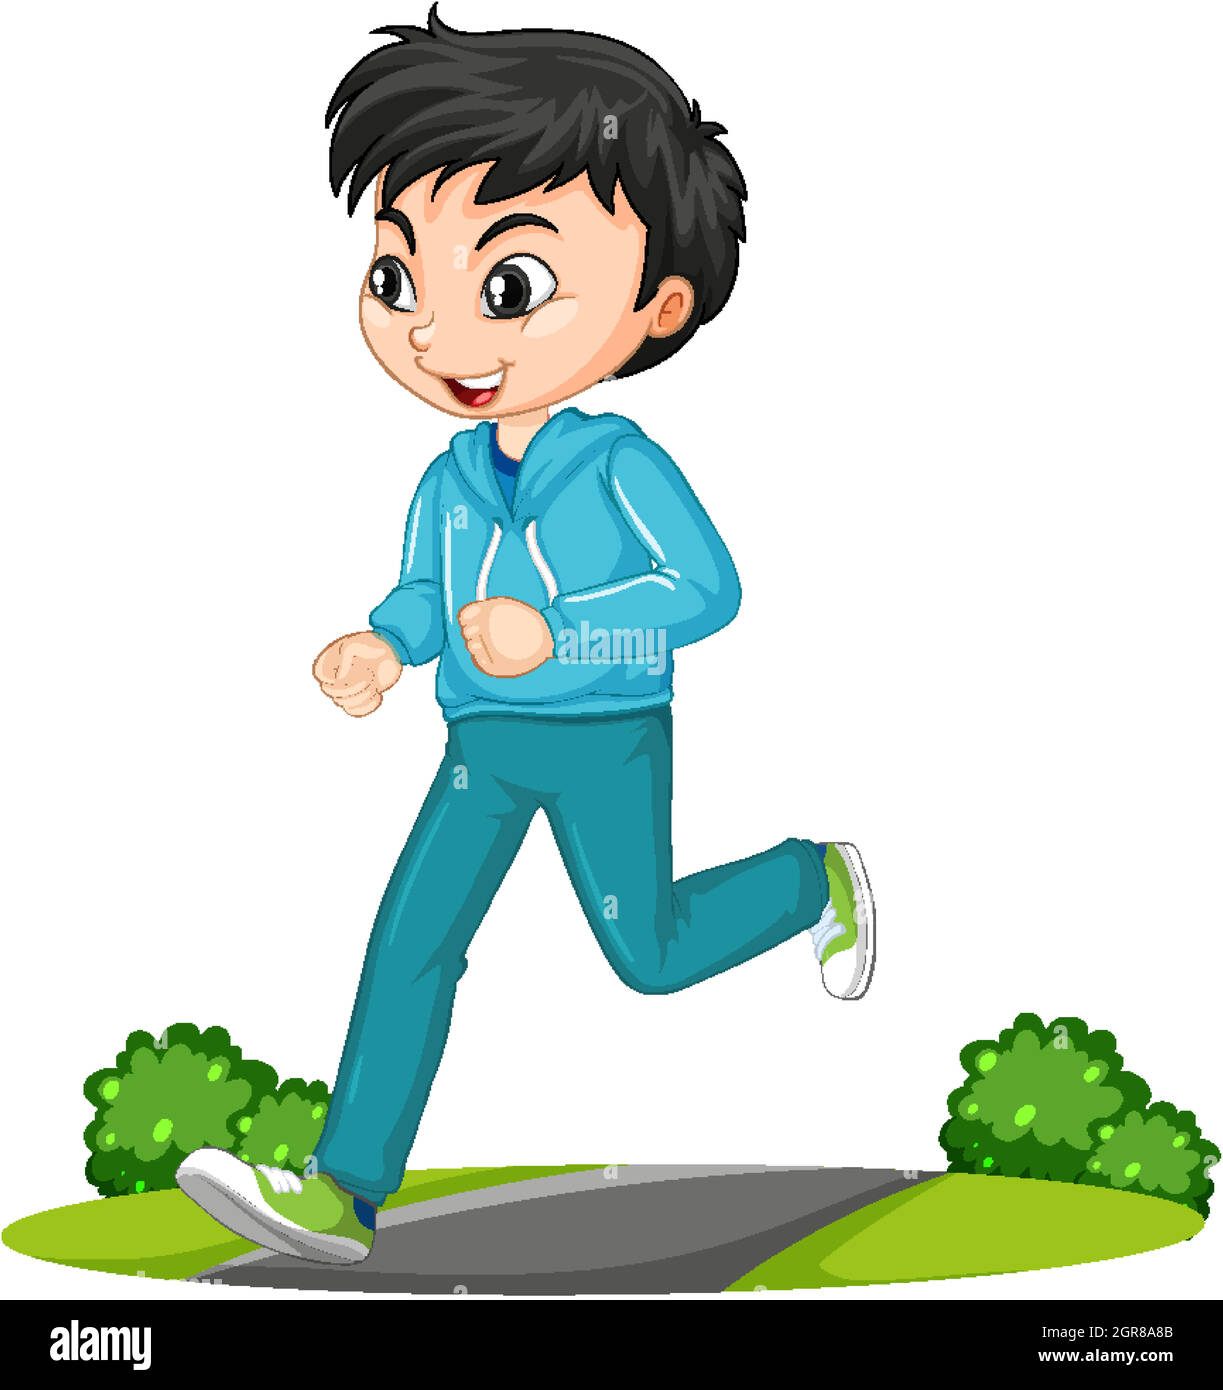 Personnage de dessin animé d'exercice de course à pied de garçon isolé Illustration de Vecteur